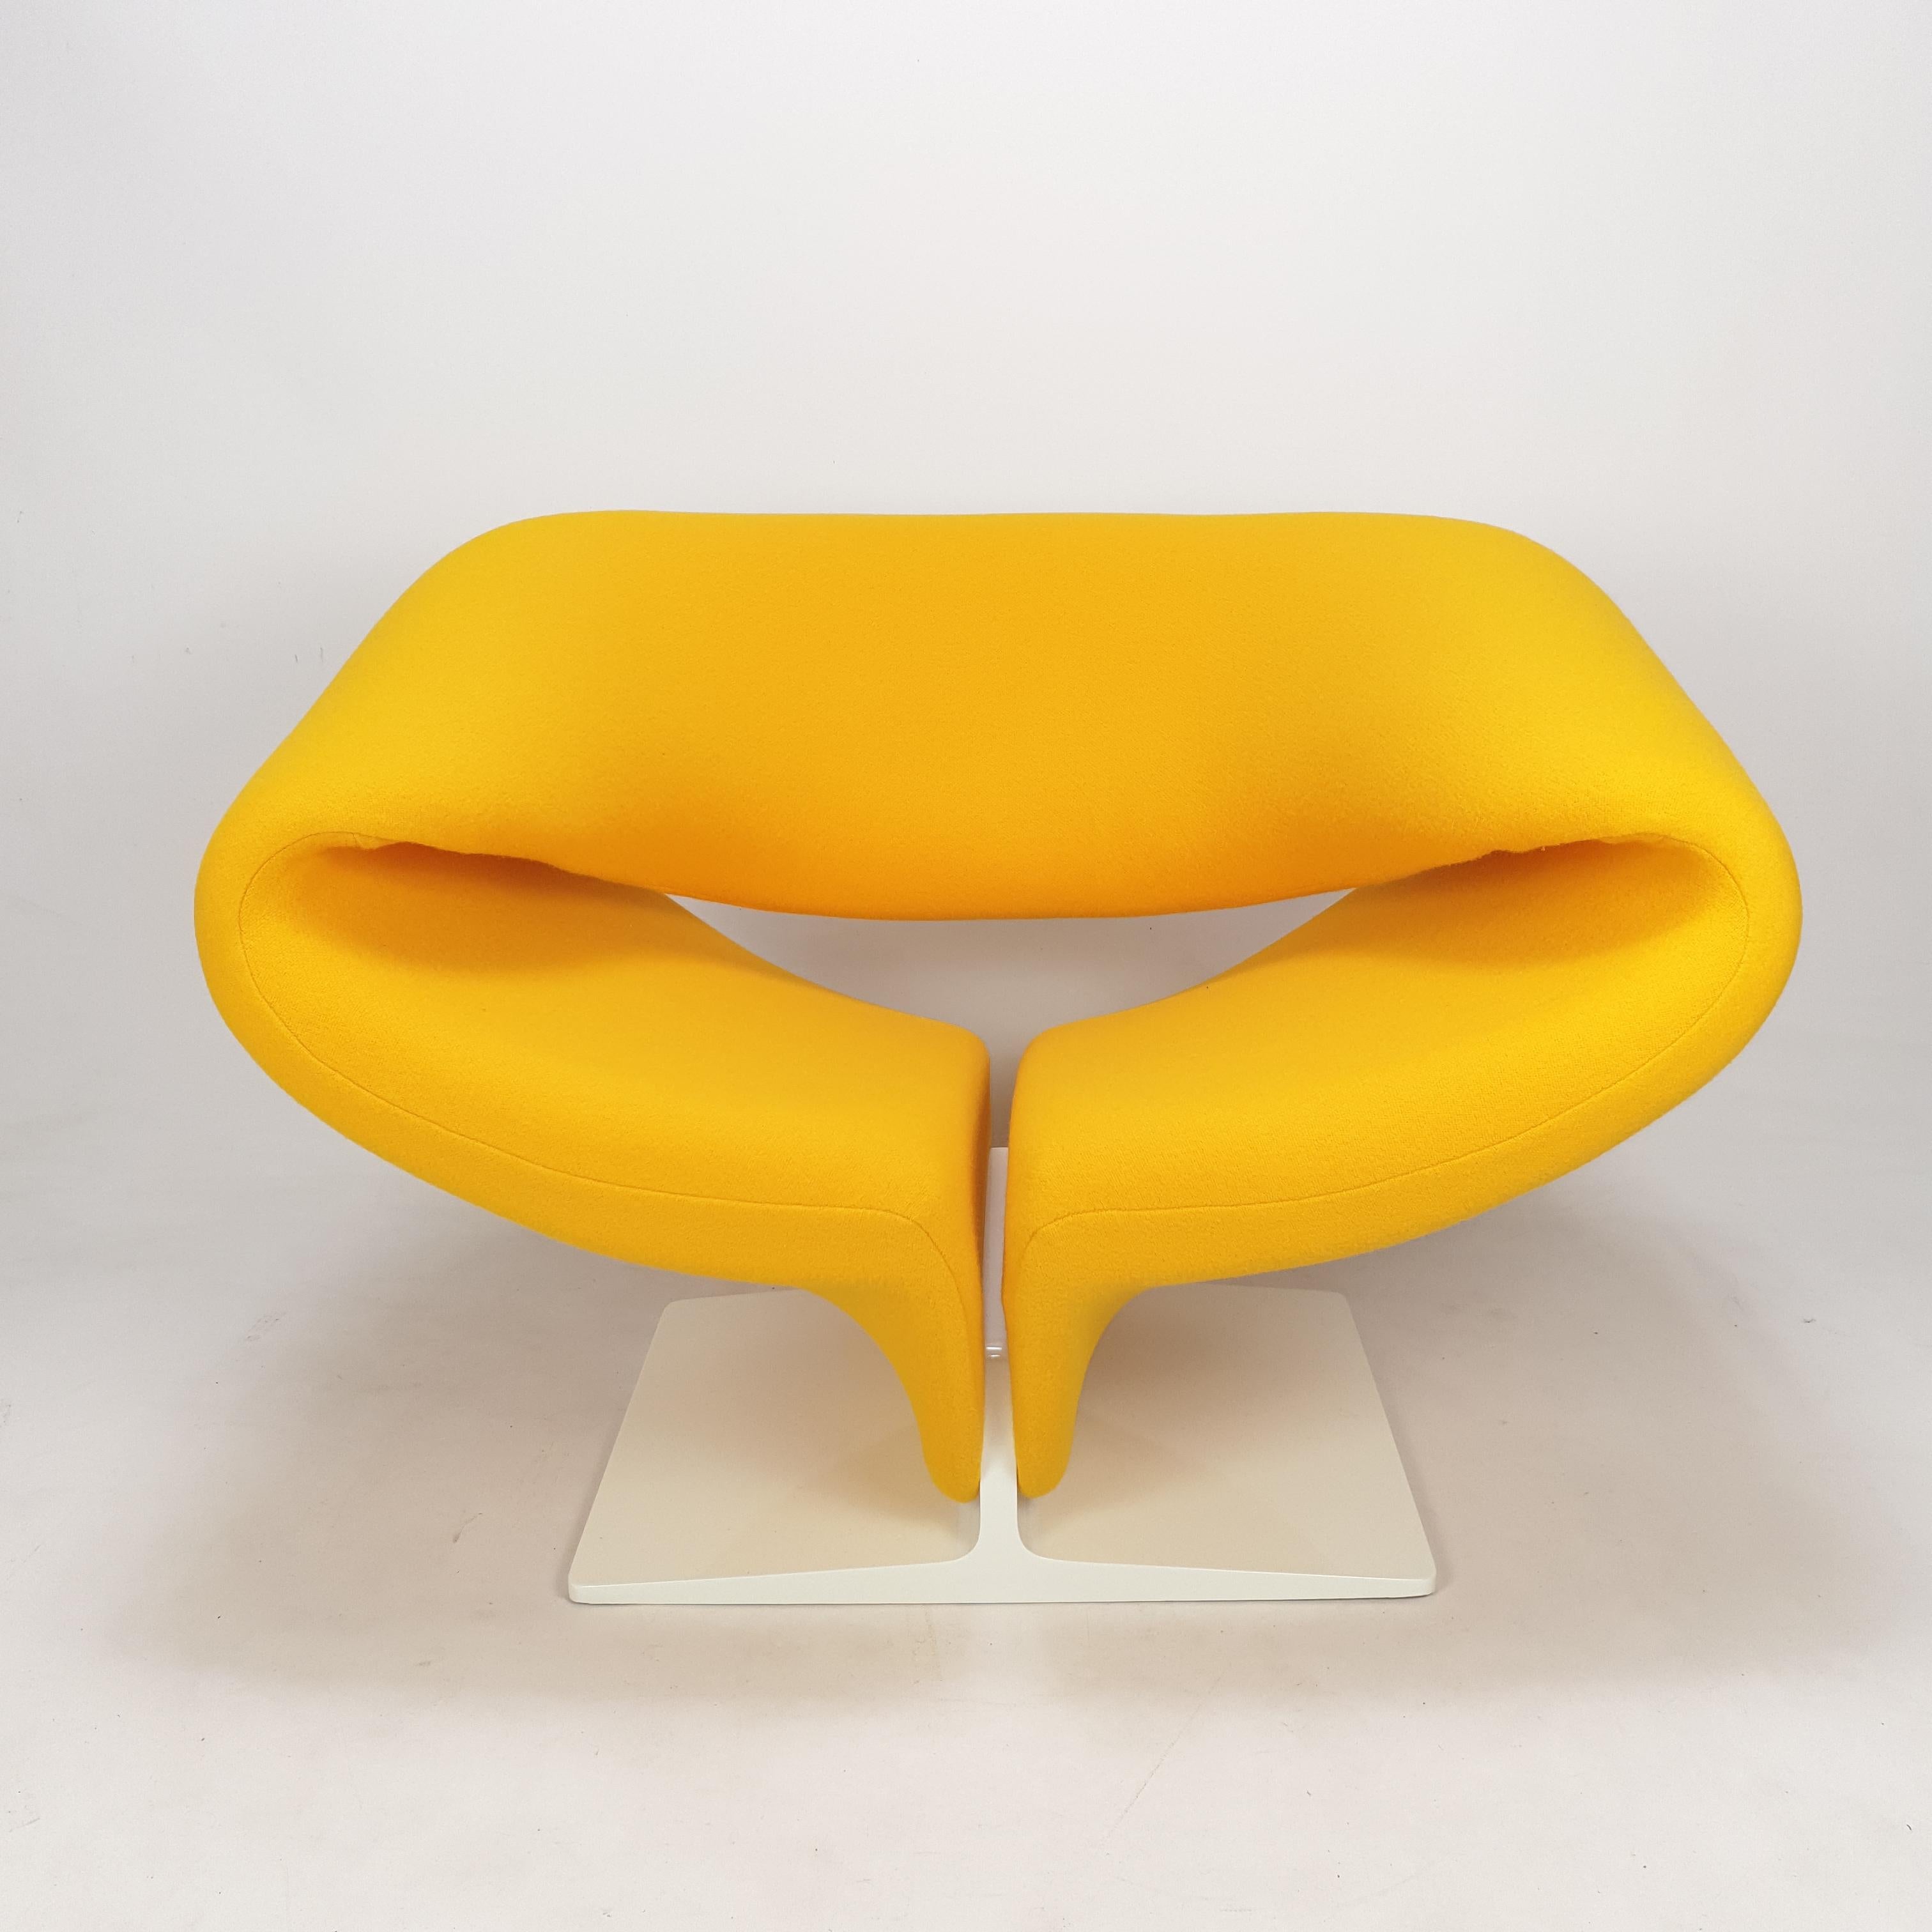 Superbe chaise ruban, conçue par le célèbre designer français Pierre Paulin dans les années 60. 
Cette chaise étonnamment confortable est produite par Artifort. 

Cadre en métal avec ressorts horizontaux, recouvert de mousse et de tissu